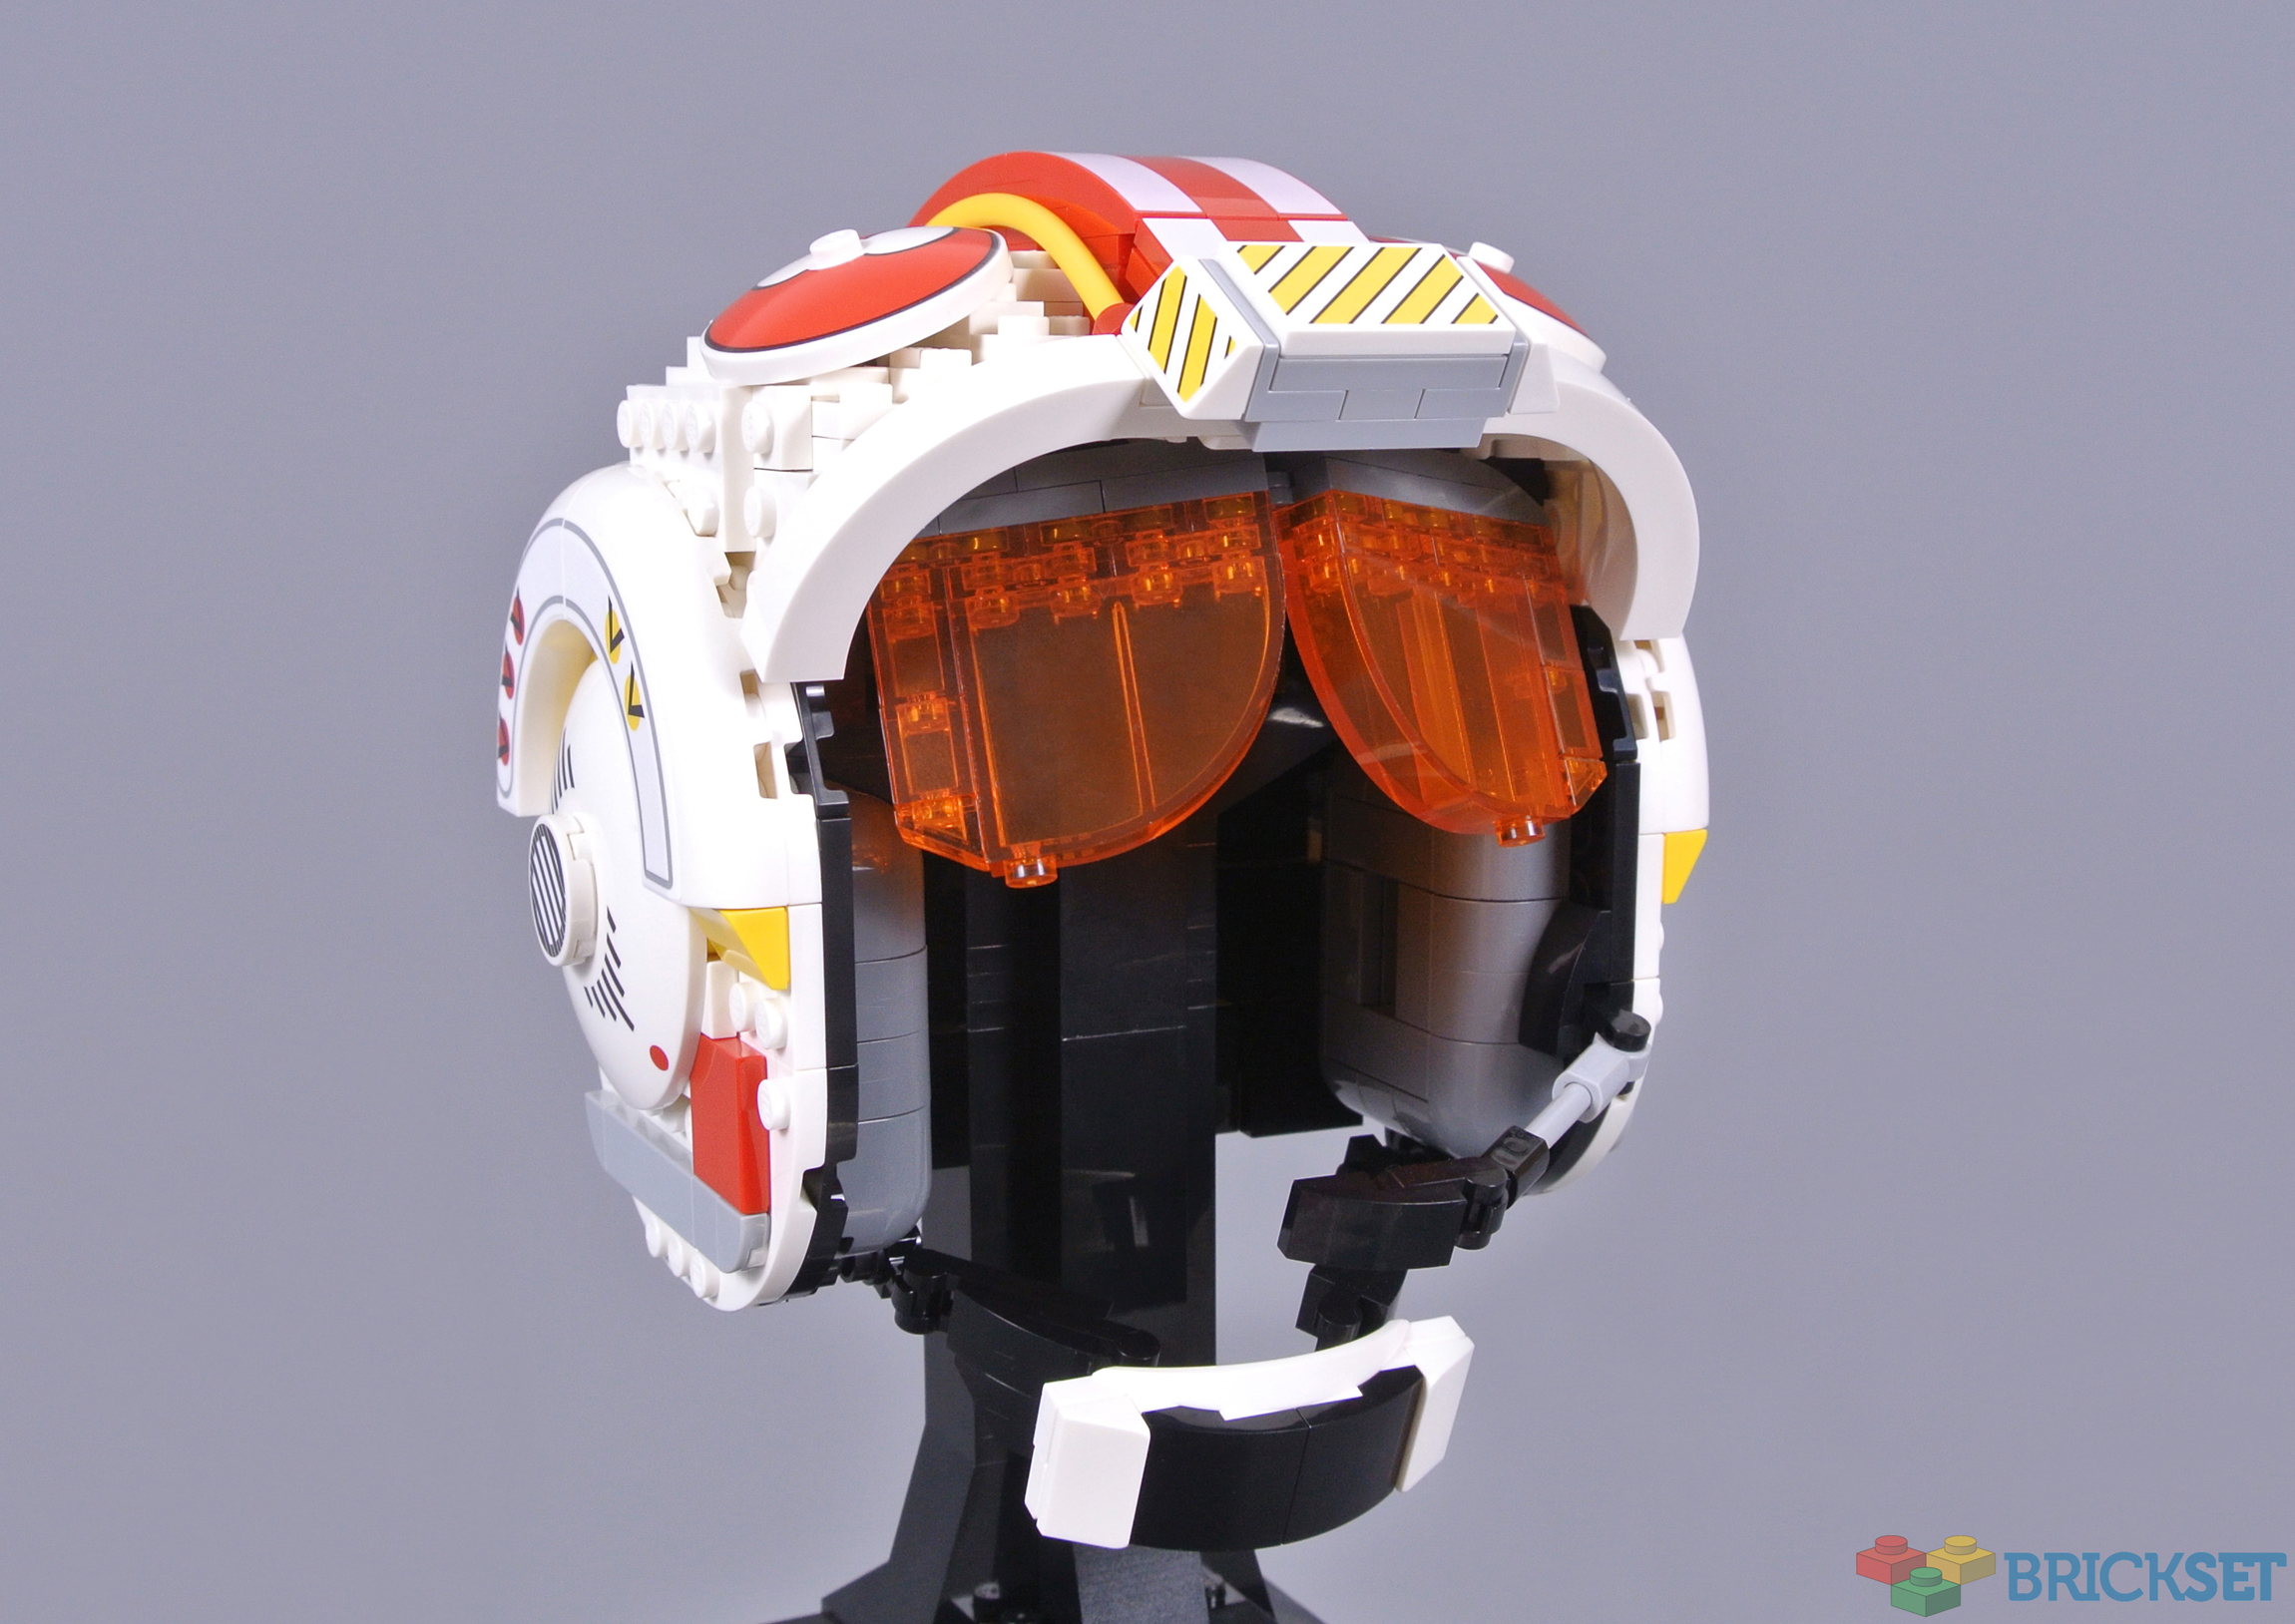 LEGO 75327 Luke Skywalker (Red Five) Helmet review